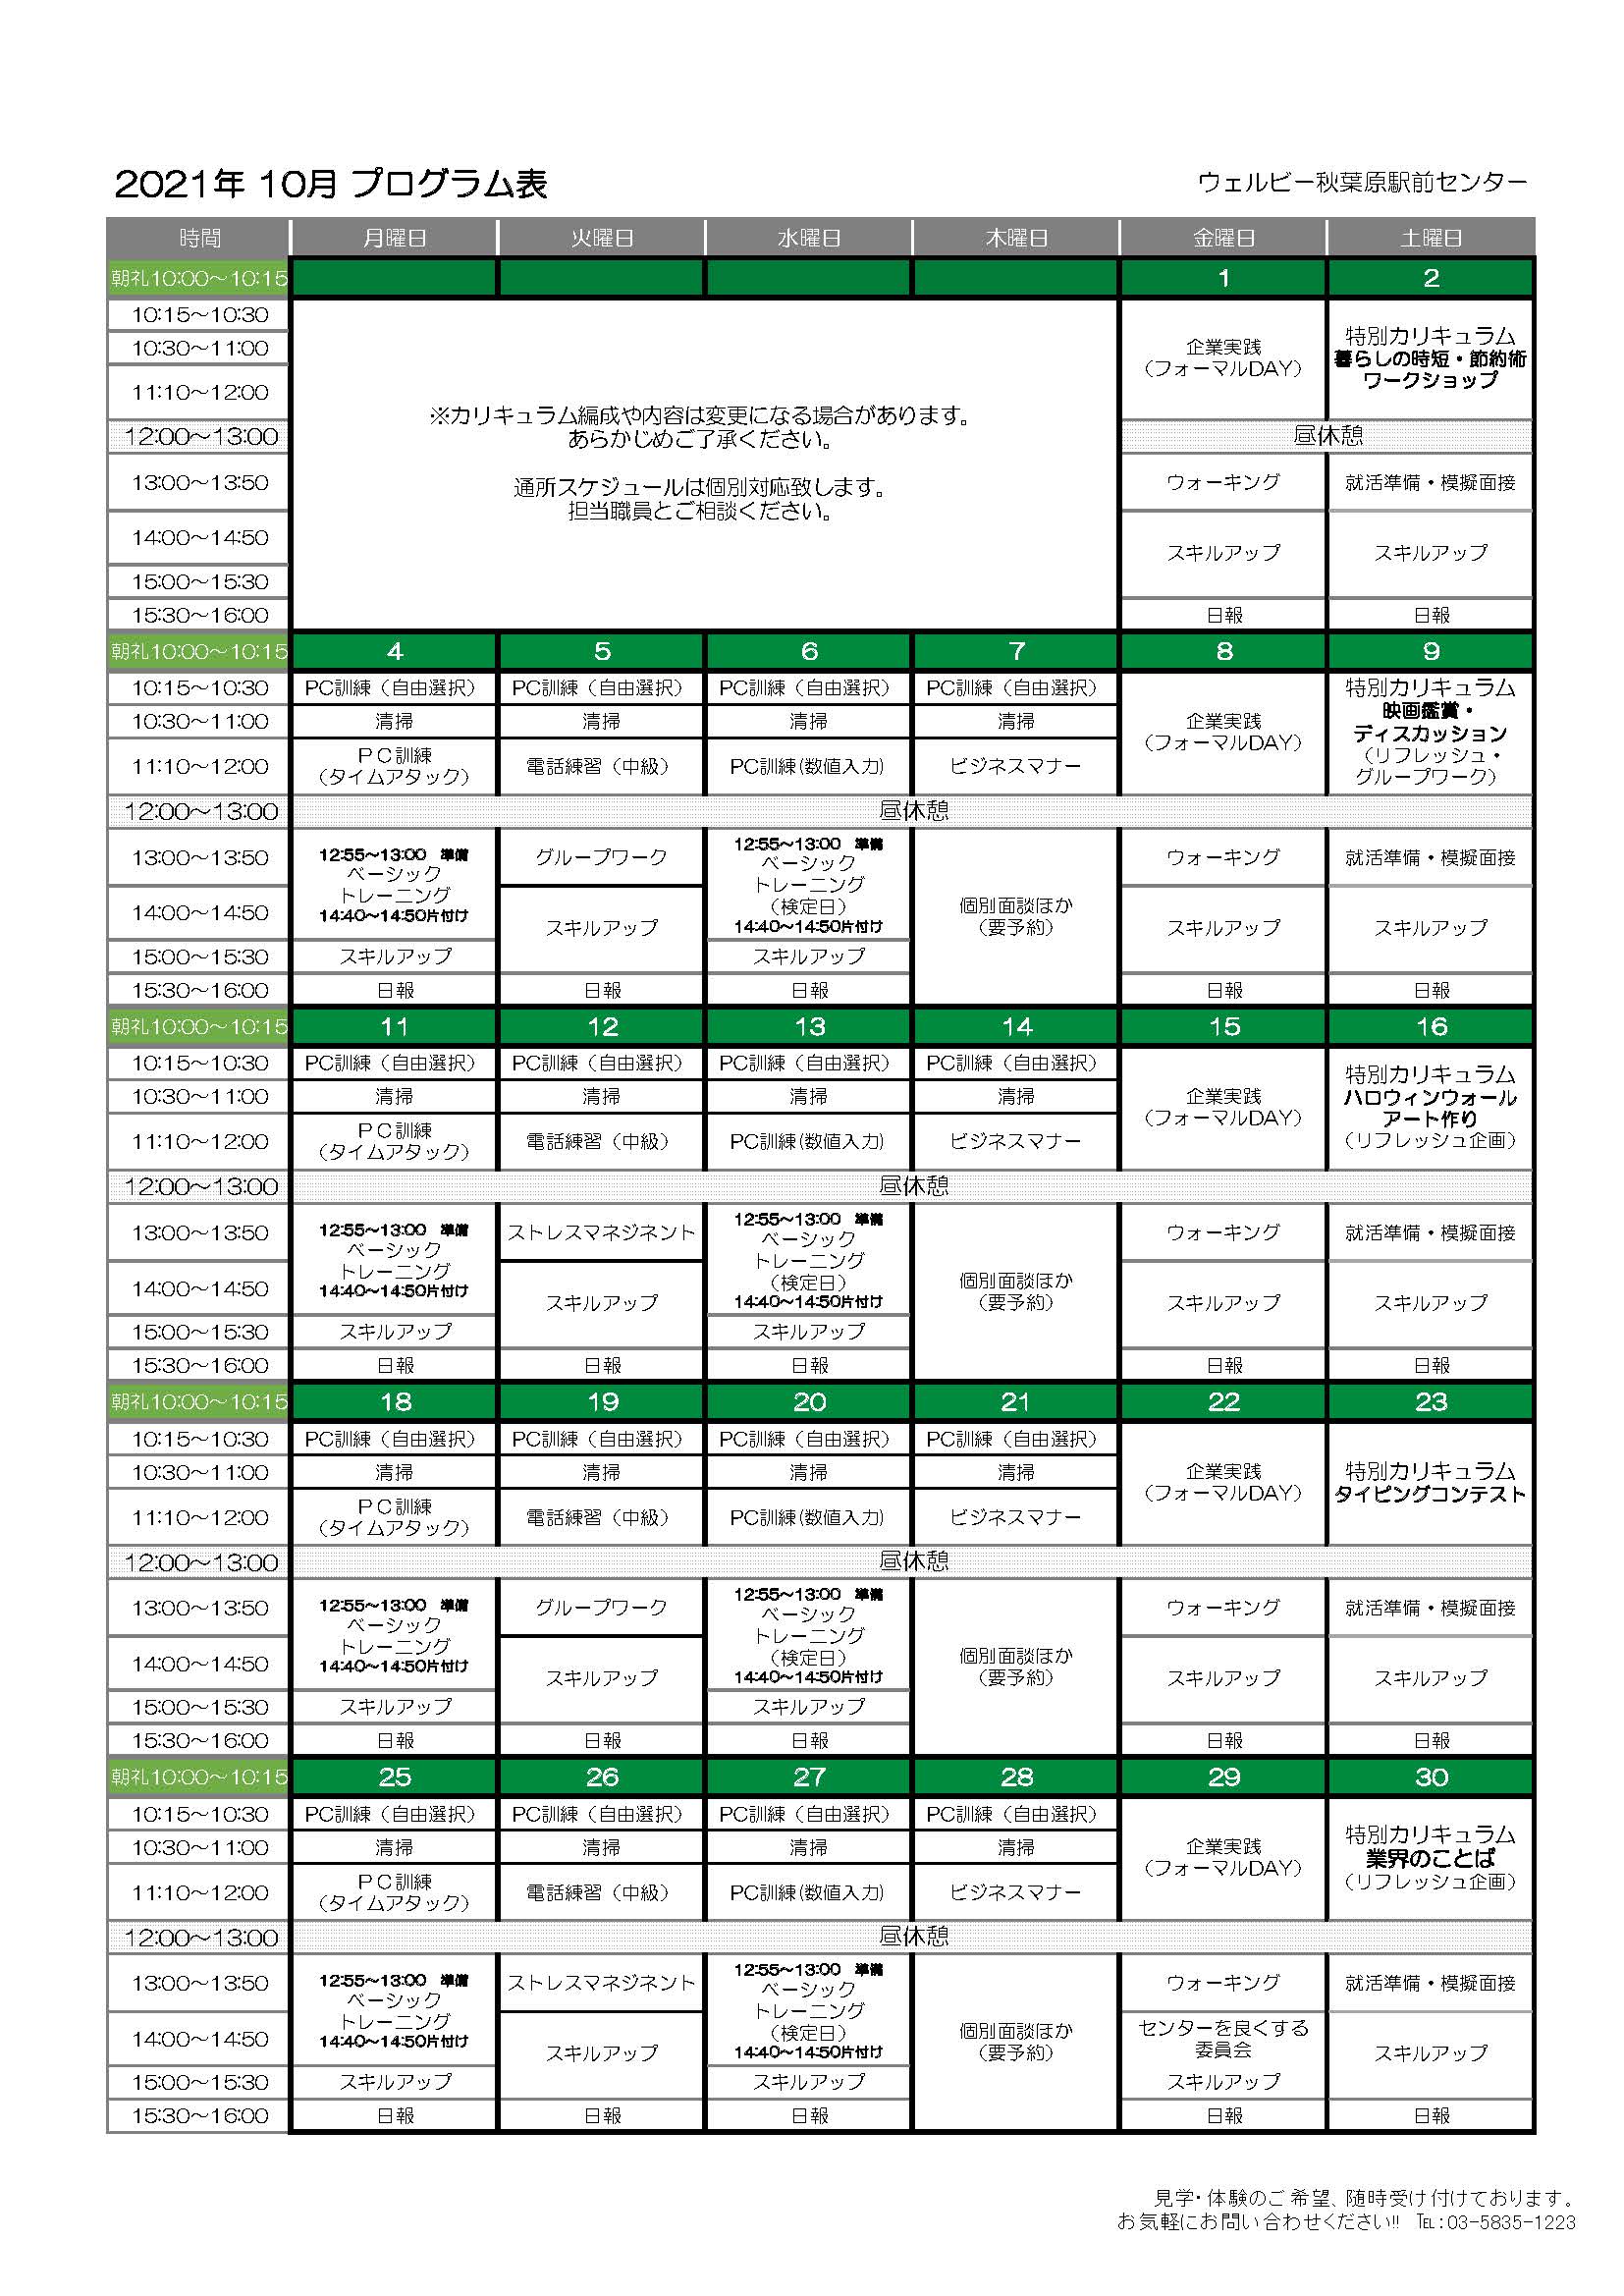 ウェルビー秋葉原駅前センター月間プログラム表+(10月)